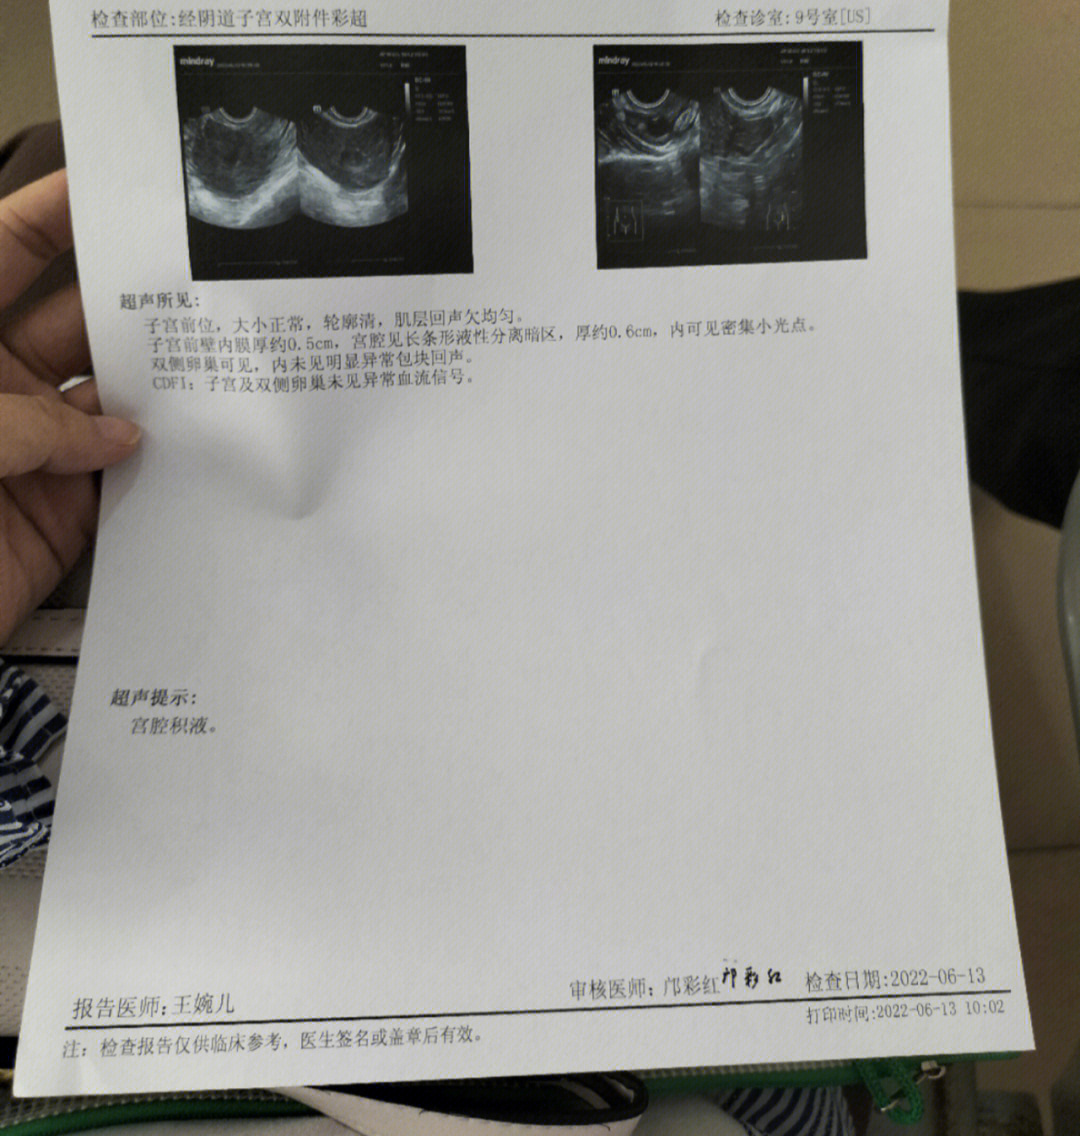 宫腔积血图片图片